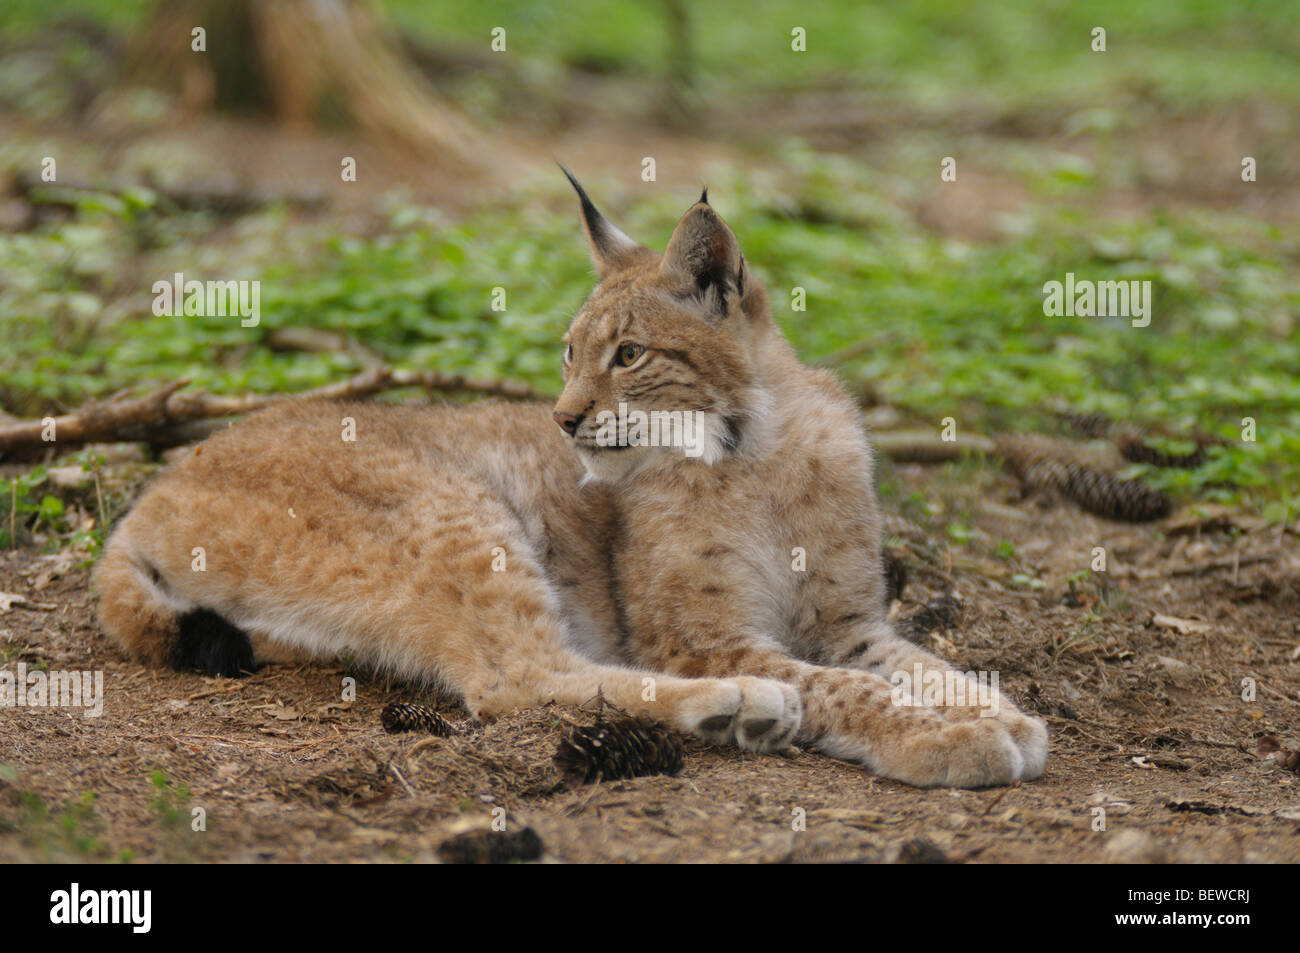 Lynx (Lynx lynx) lying in forest Stock Photo